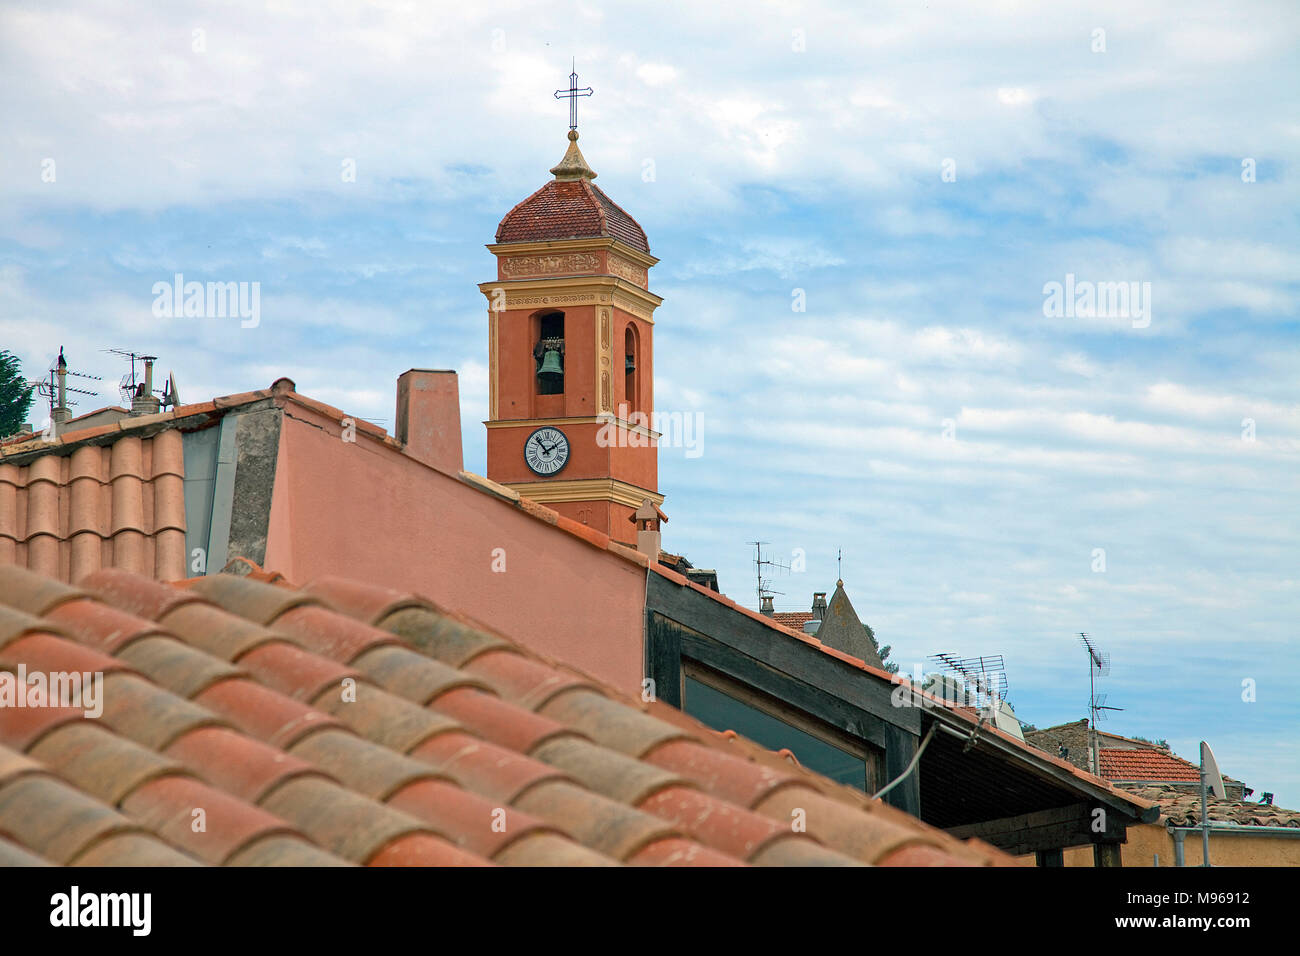 Vista sui tetti del paese Roquebrune-Cap-Martin sul campanile della chiesa, il sud della Francia, Alpes-Maritimes, Cote d'Azur, in Francia, in Europa Foto Stock